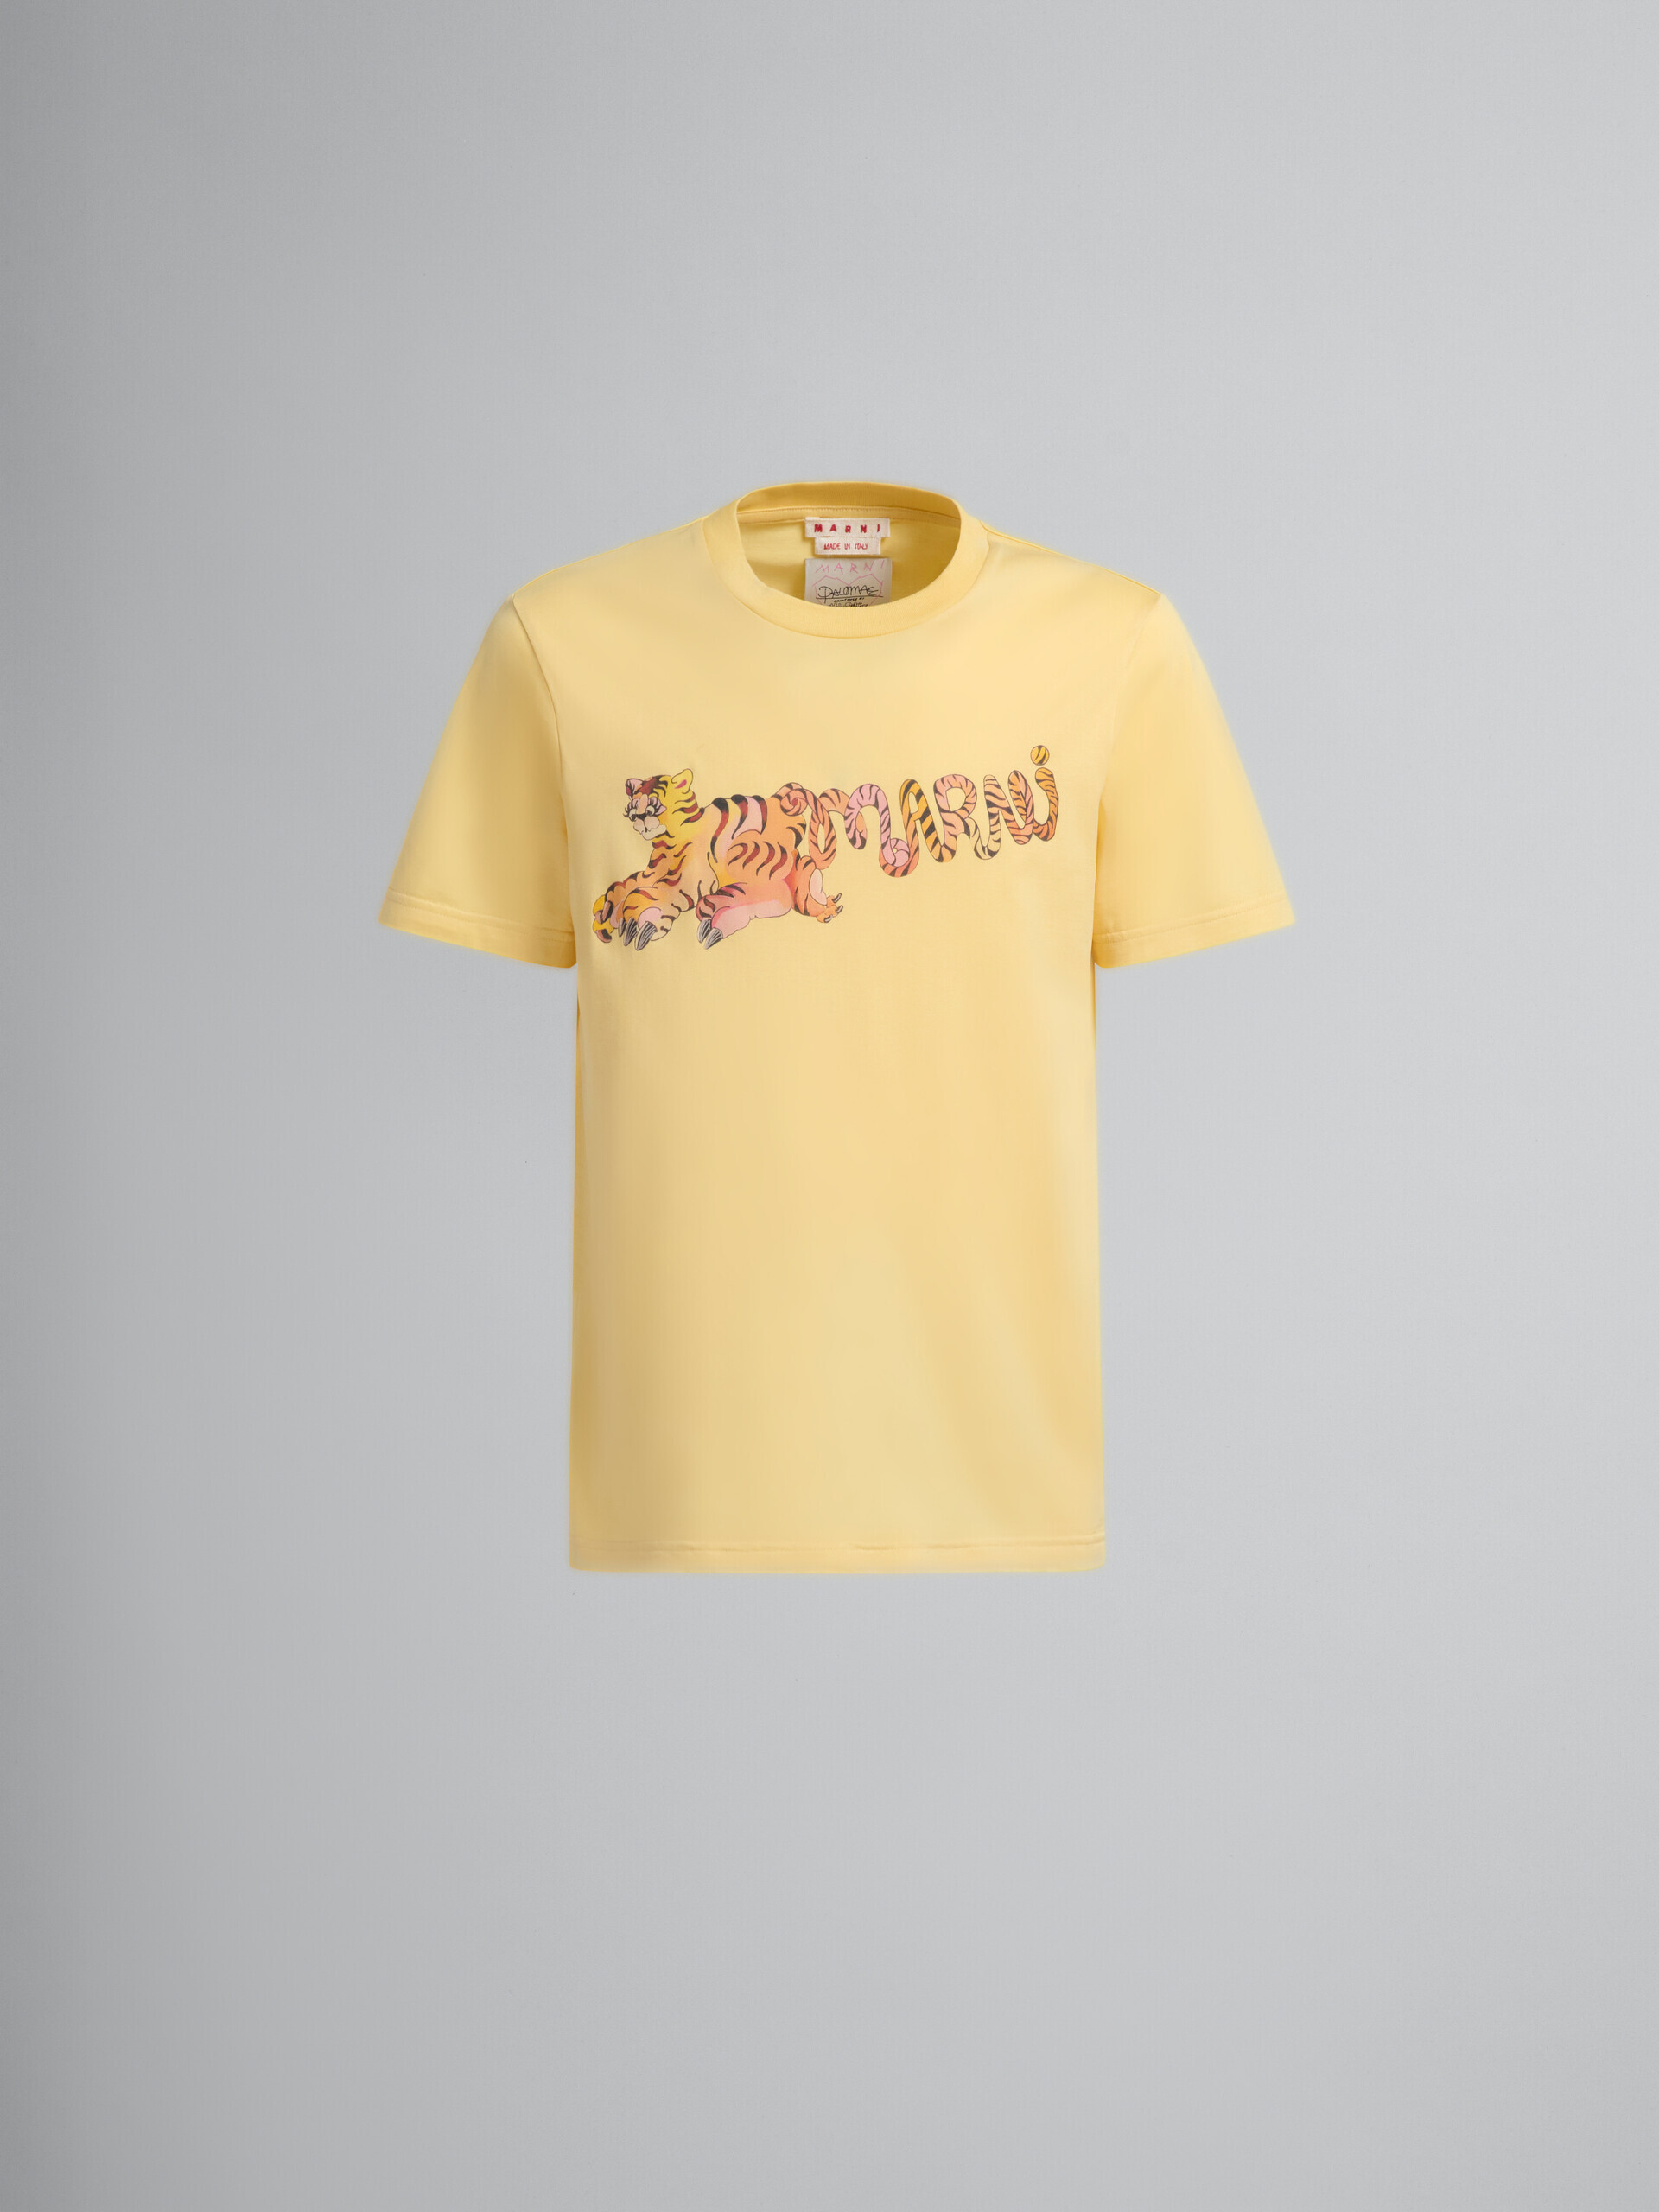 T-shirt coupe régulière en coton organique jaune avec motif - T-shirts - Image 2